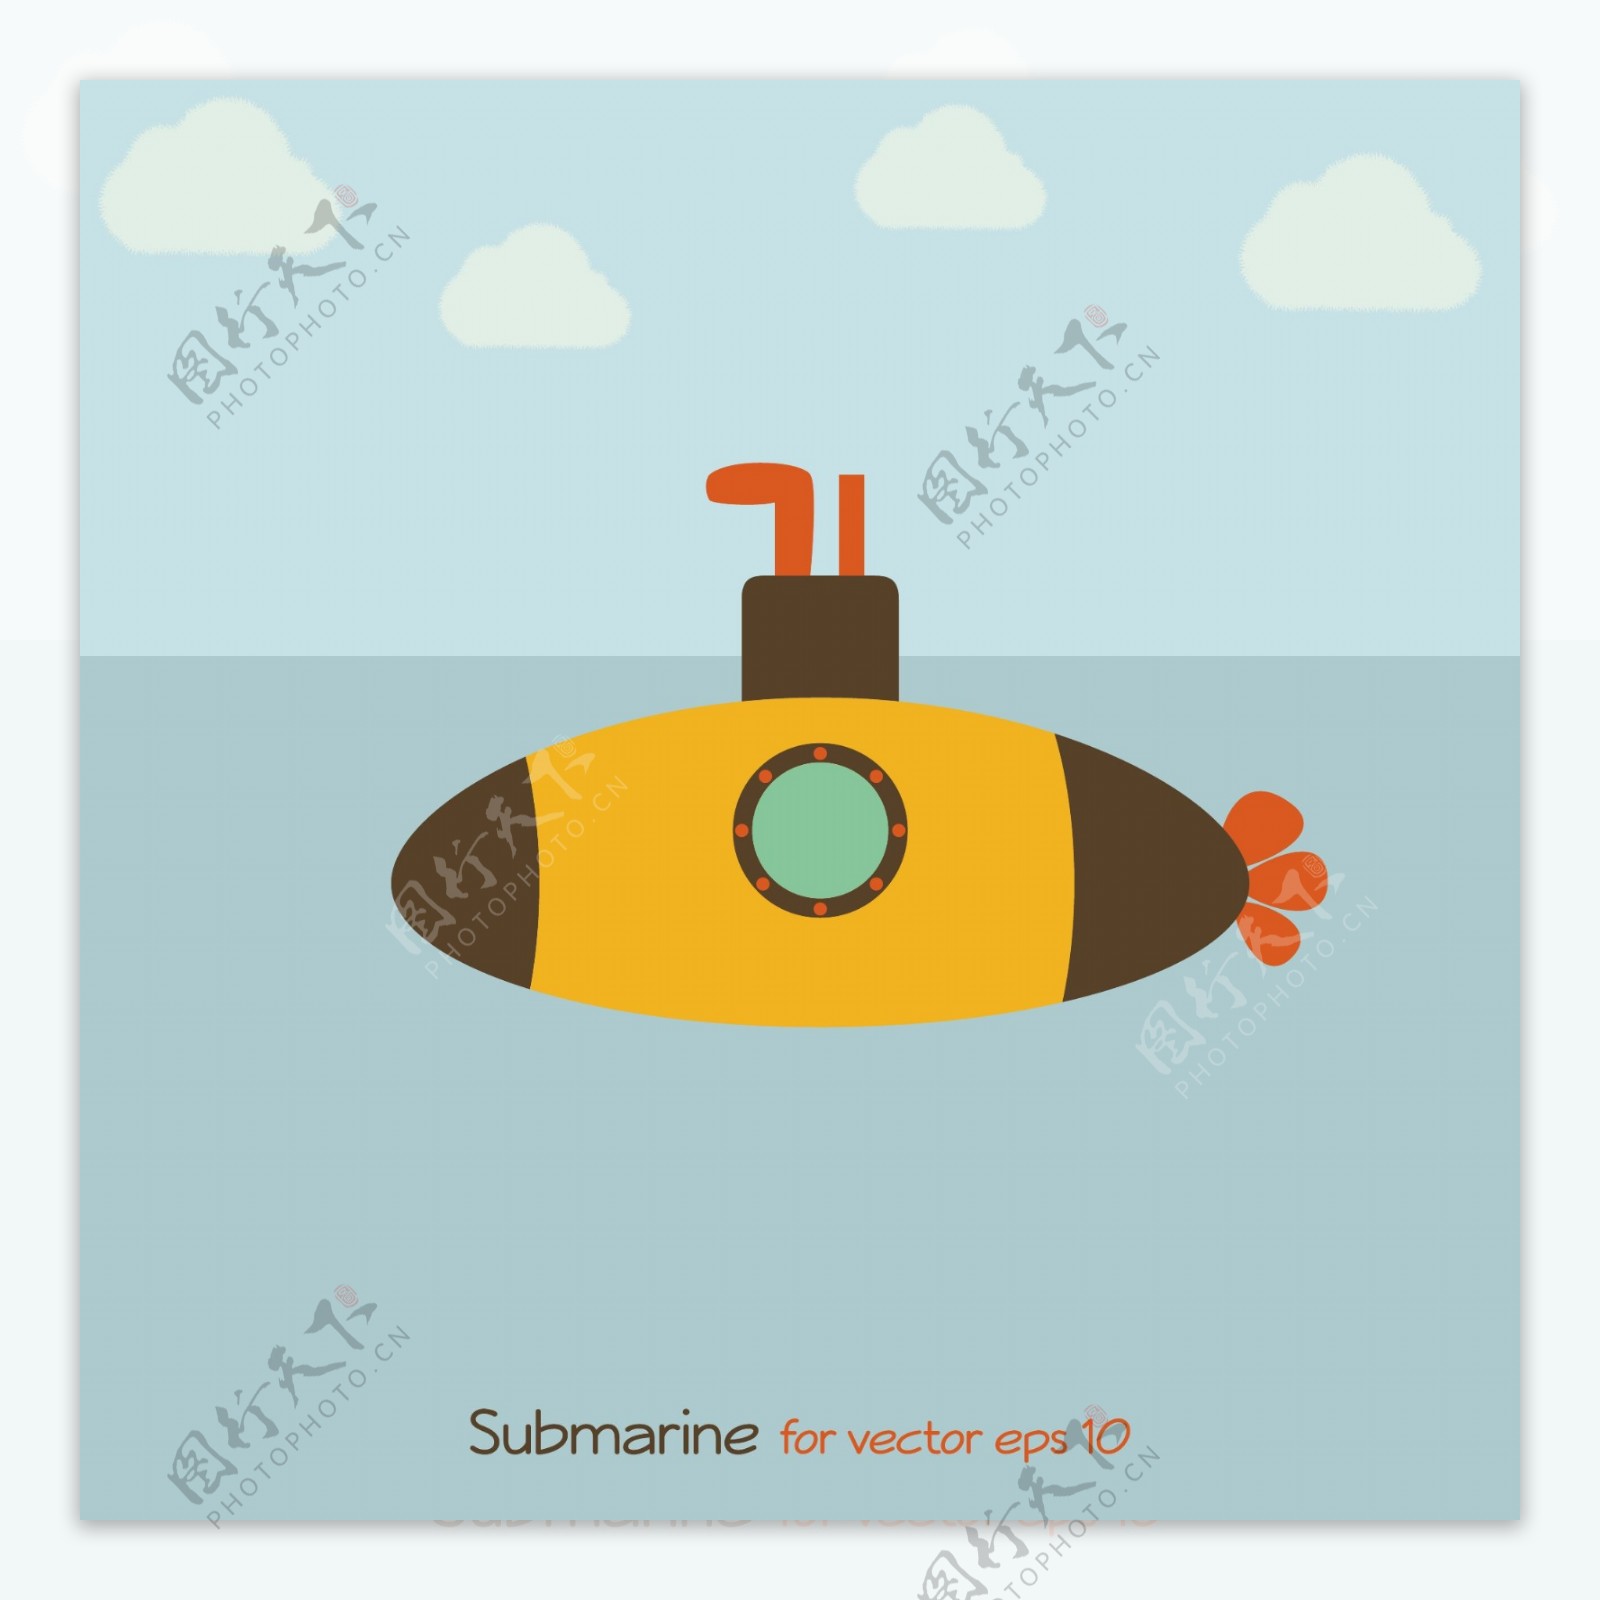 潜水艇图片